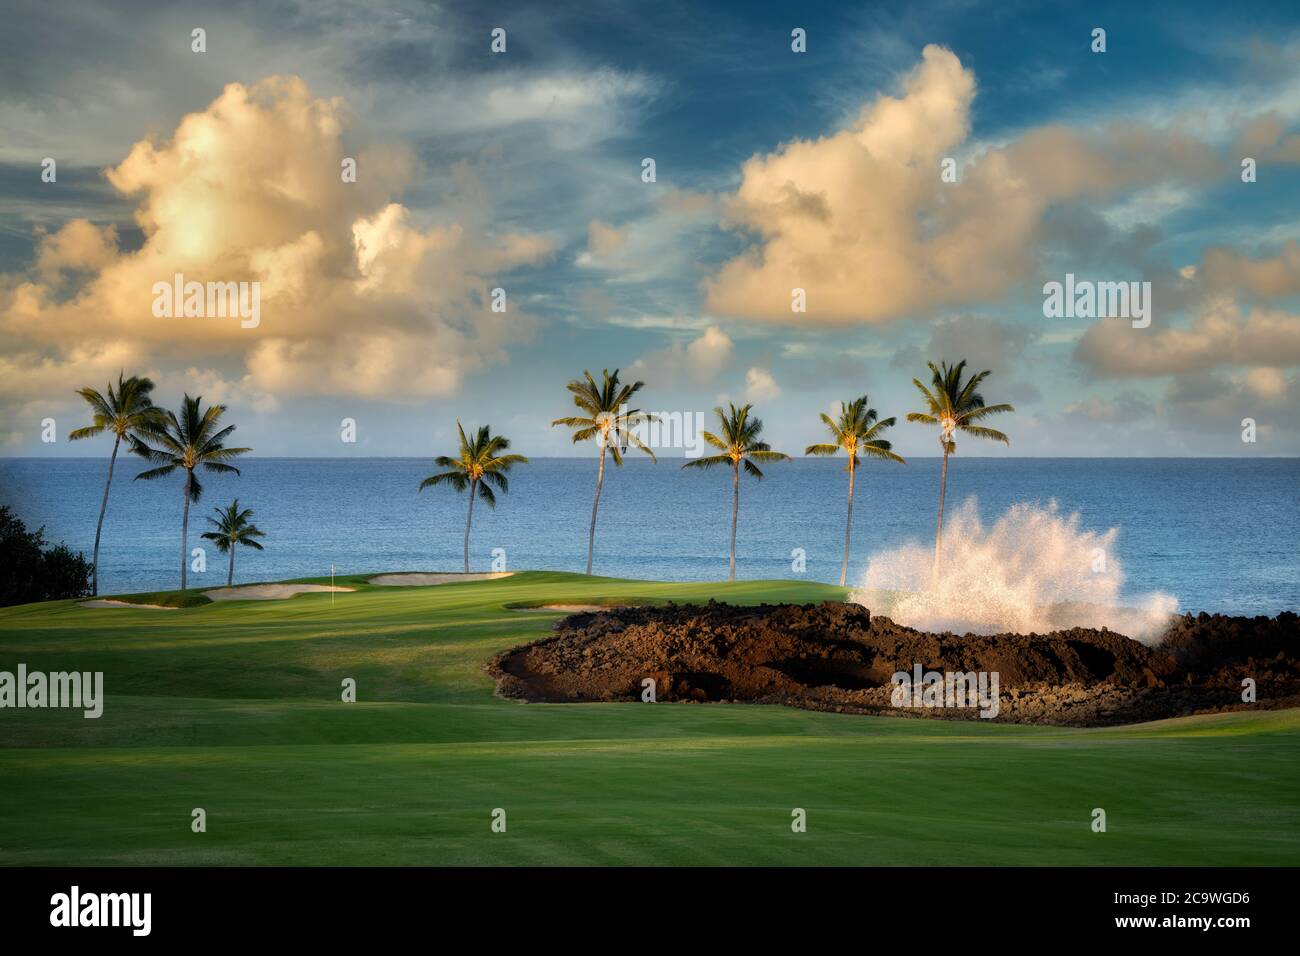 Vagues écrasant, palmiers et parcours de golf. Hilton Waikoloa Beach Golf Resort. Hawaï, la Grande île Banque D'Images